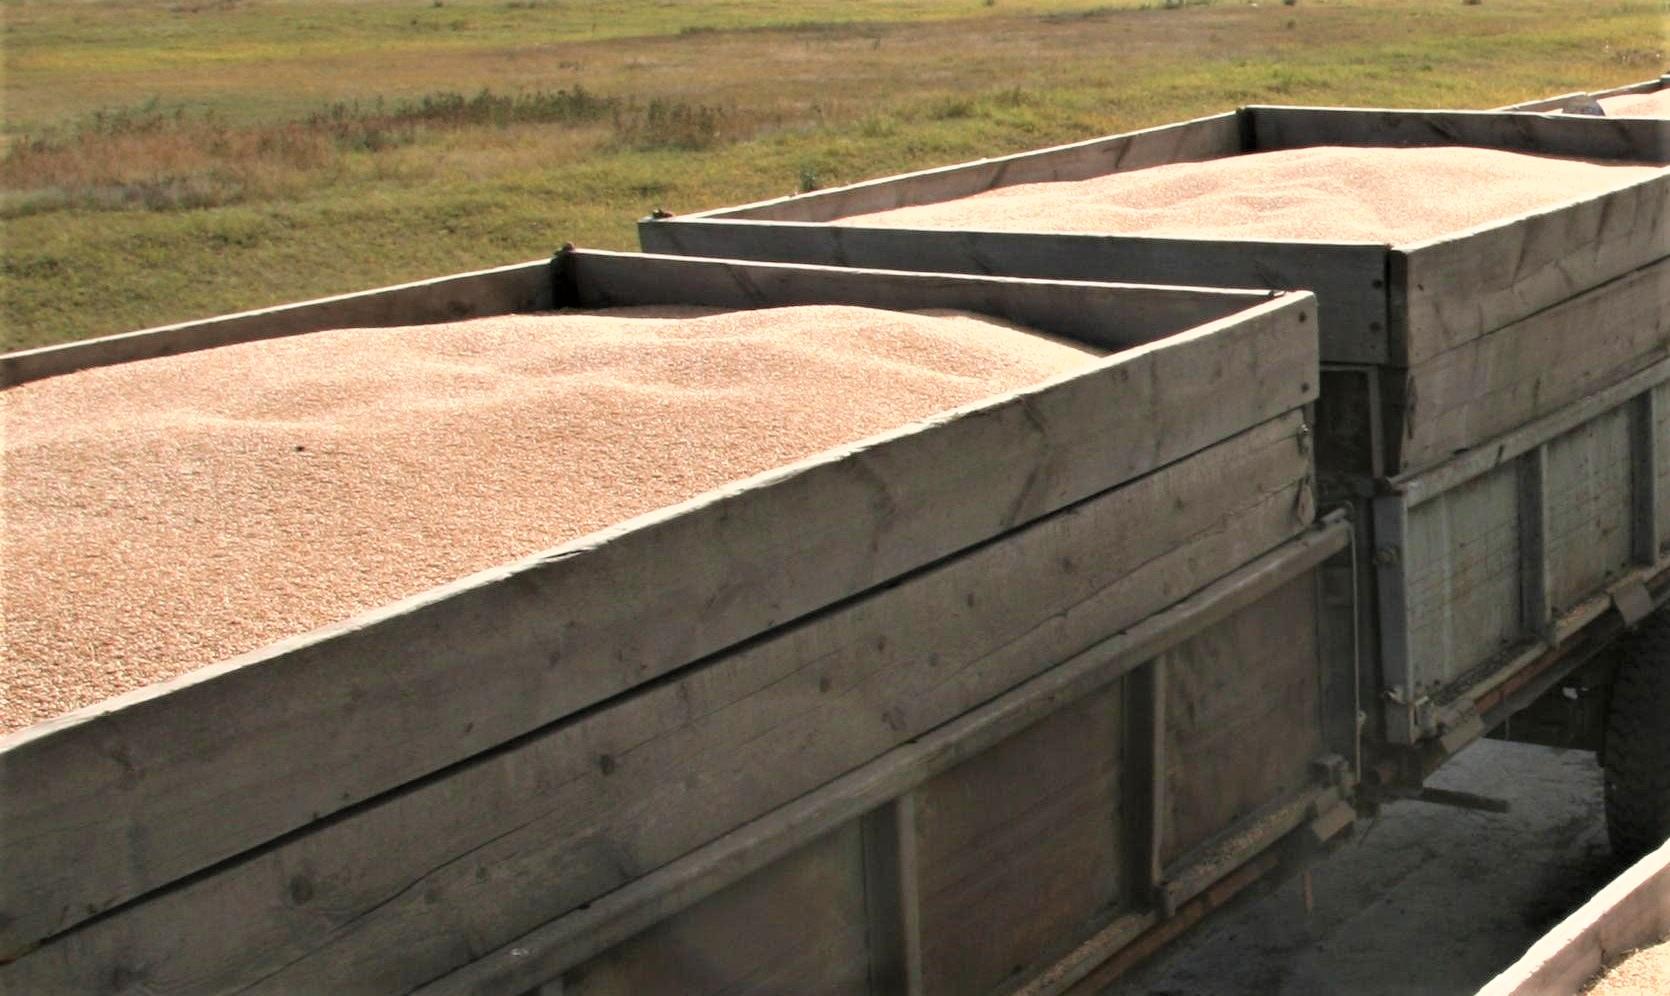 Китай начнет импортировать казахстанское зерно в бОльших объемах